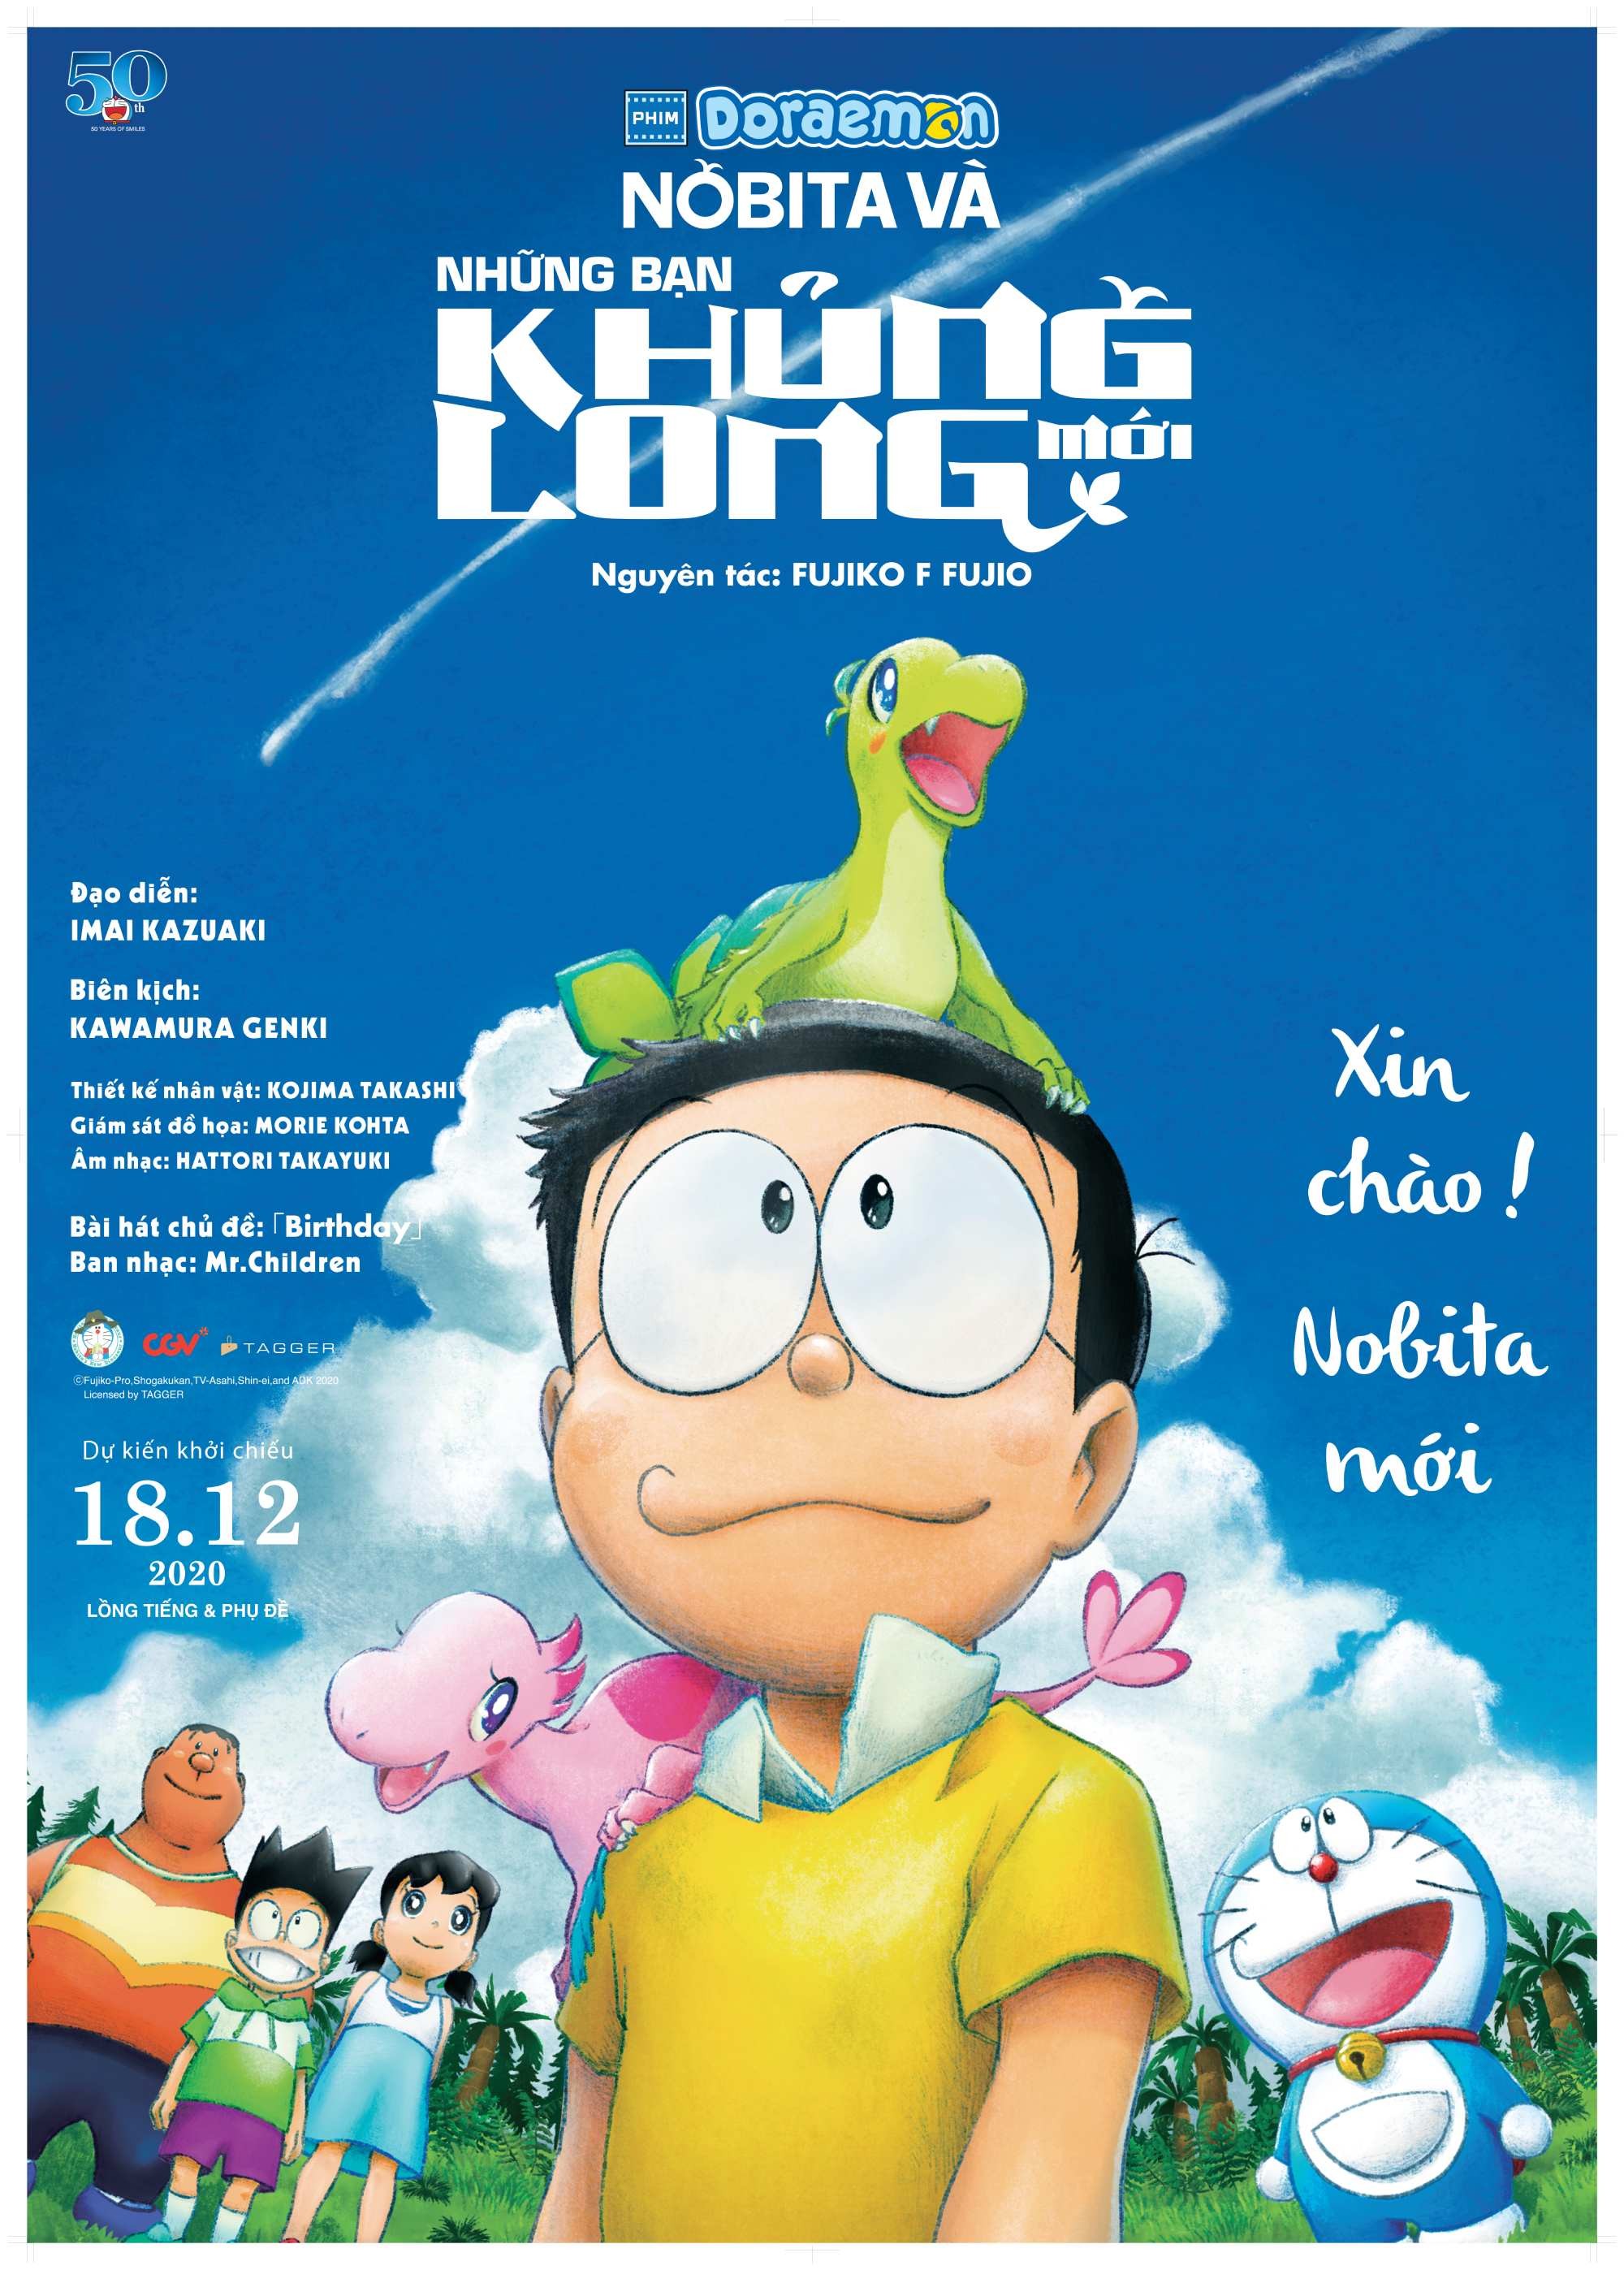 Phim Chiếu Rạp Doraemon Mới Nhất: Hành Trình Kỳ Thú Đến Vùng Đất Lý Tưởng - Đặt Vé Ngay!